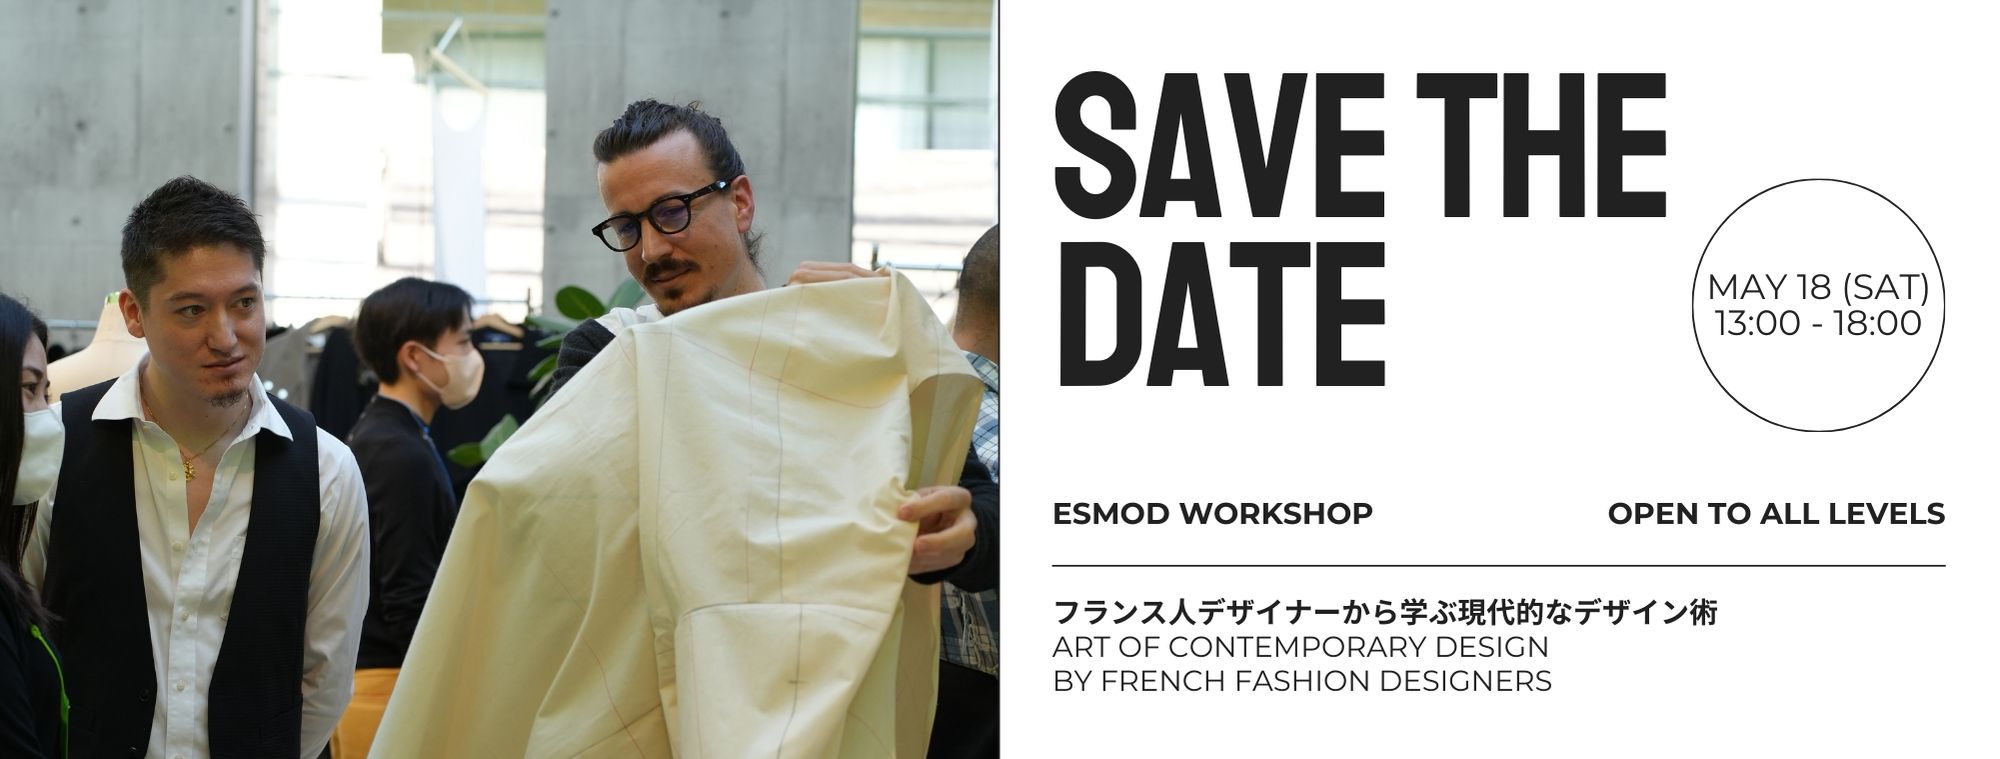 エスモード・東京校 【ESMOD WORKSHOP】フランス人デザイナーから学ぶ現代的なデザイン術